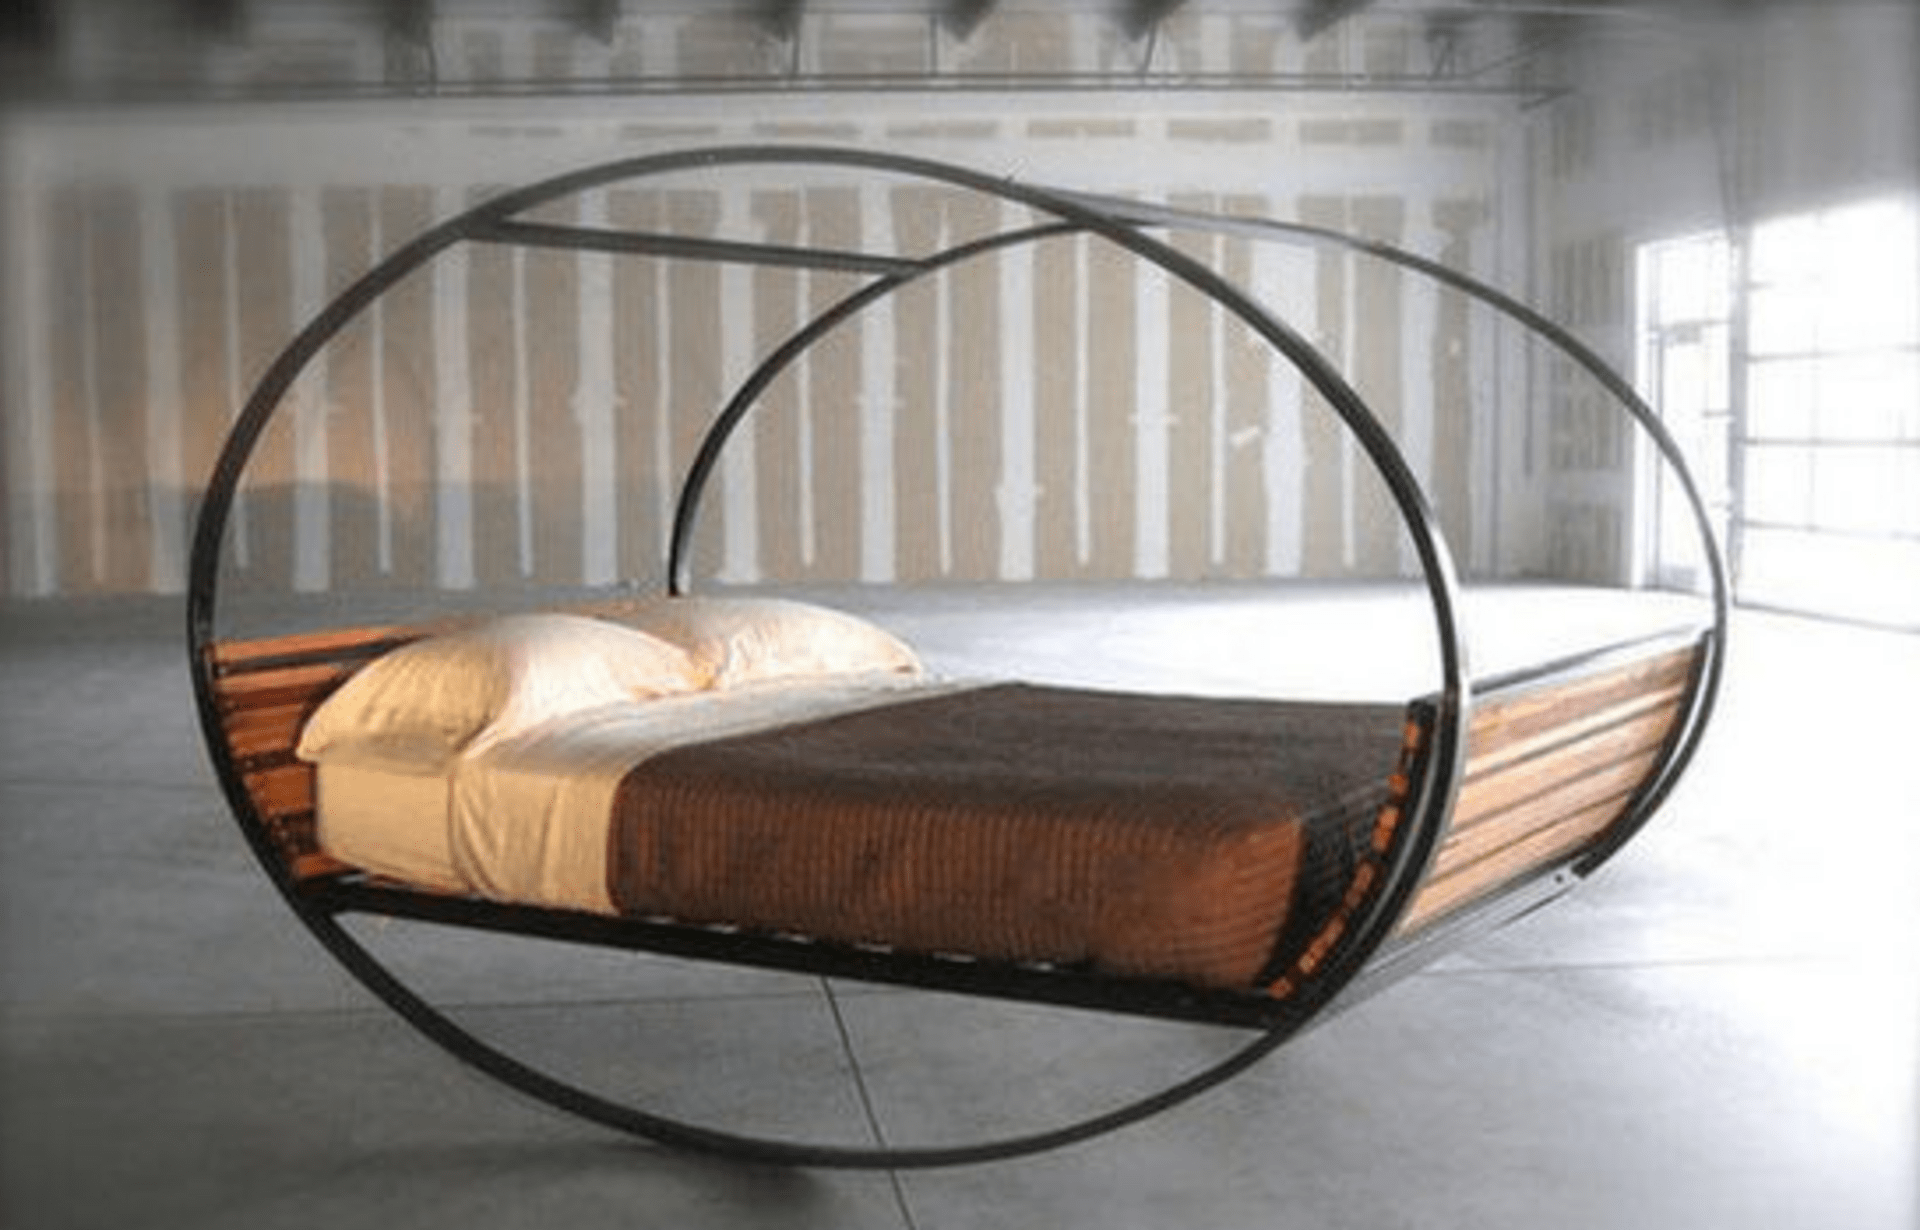 Практичная кровать с круглым каркасом из металла